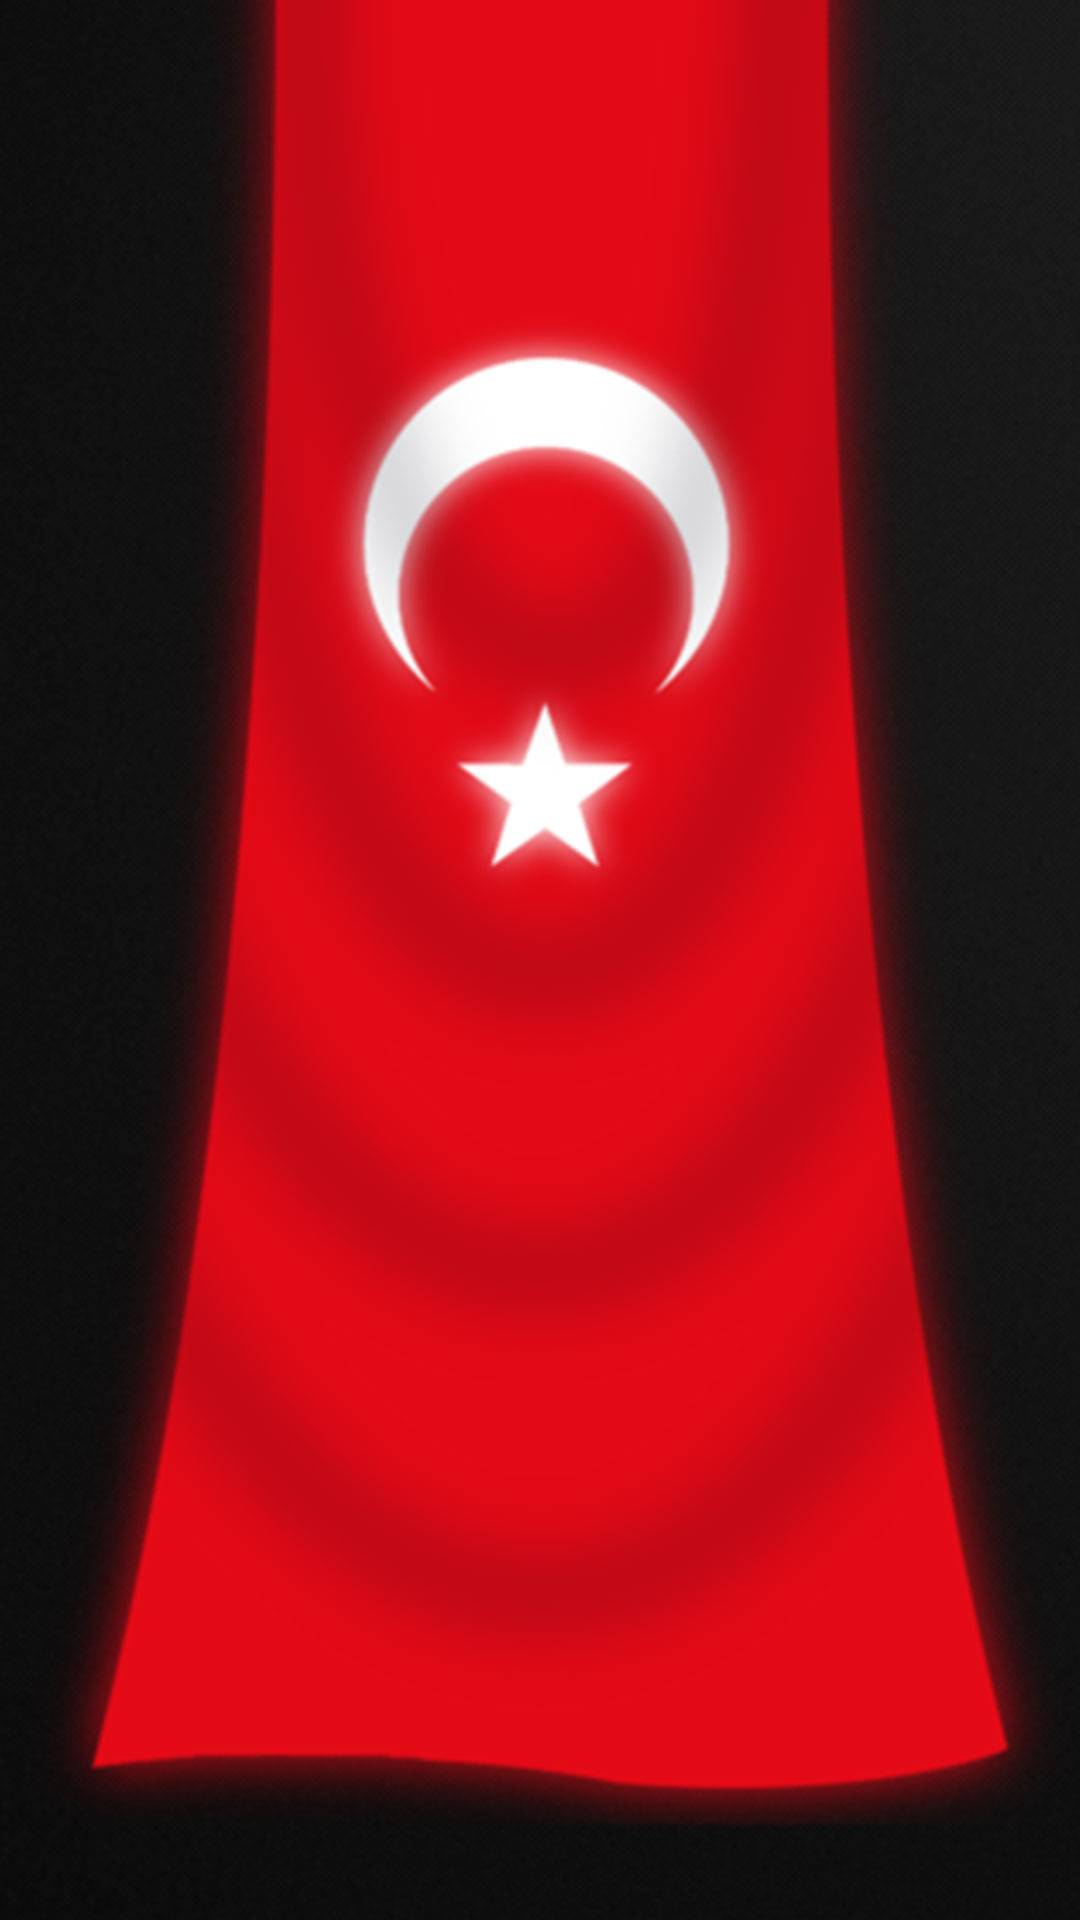 Turk bayragi cep telefonu 18